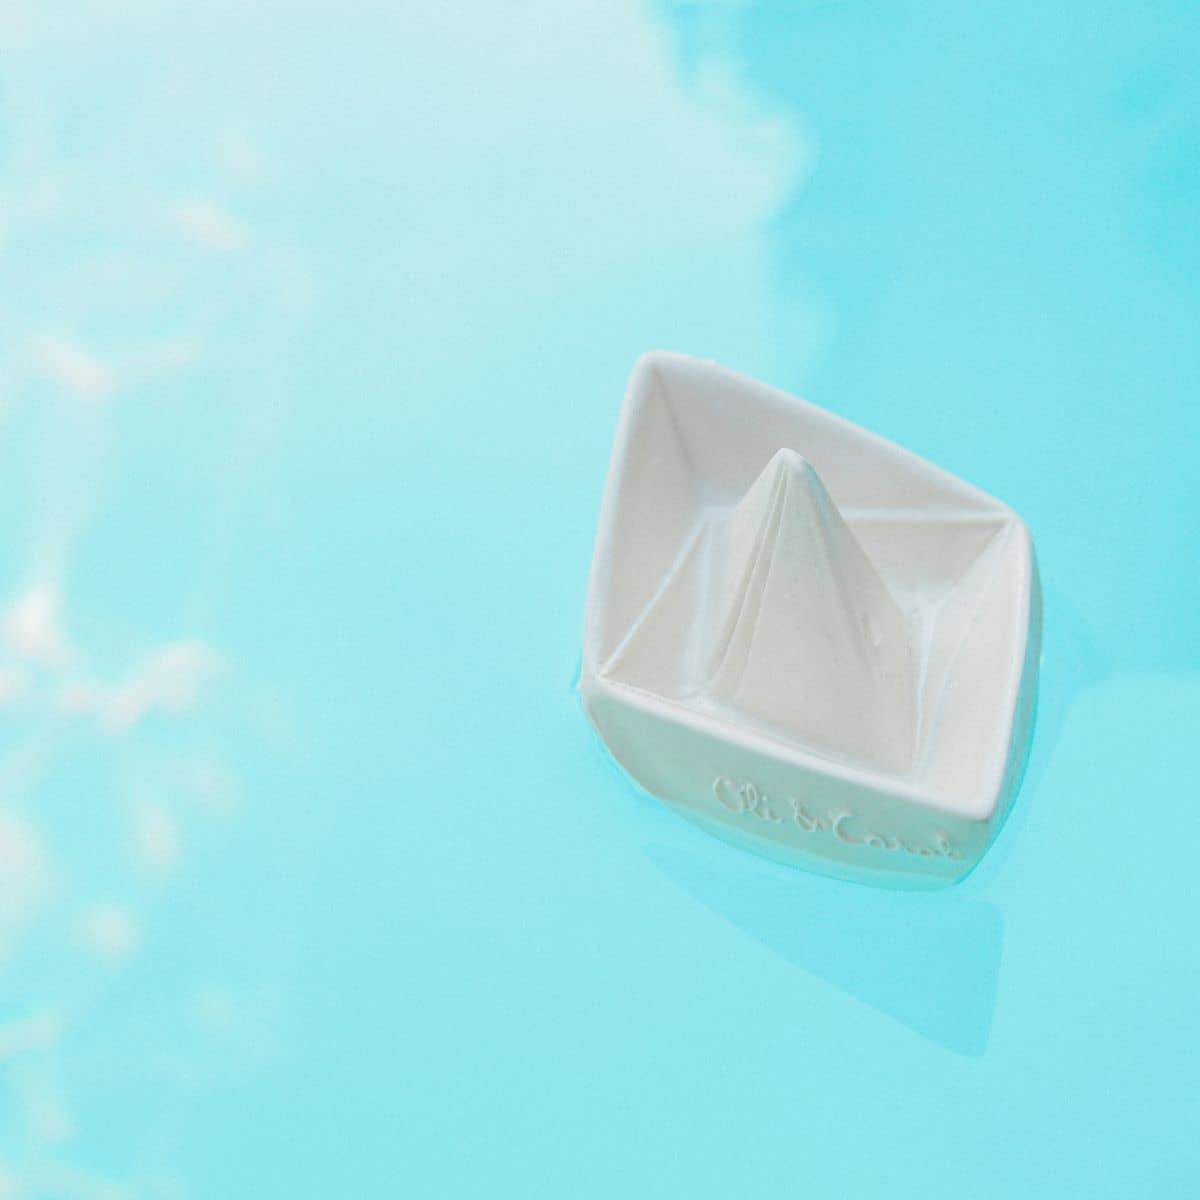 Oli & Carol Origami Boat - White